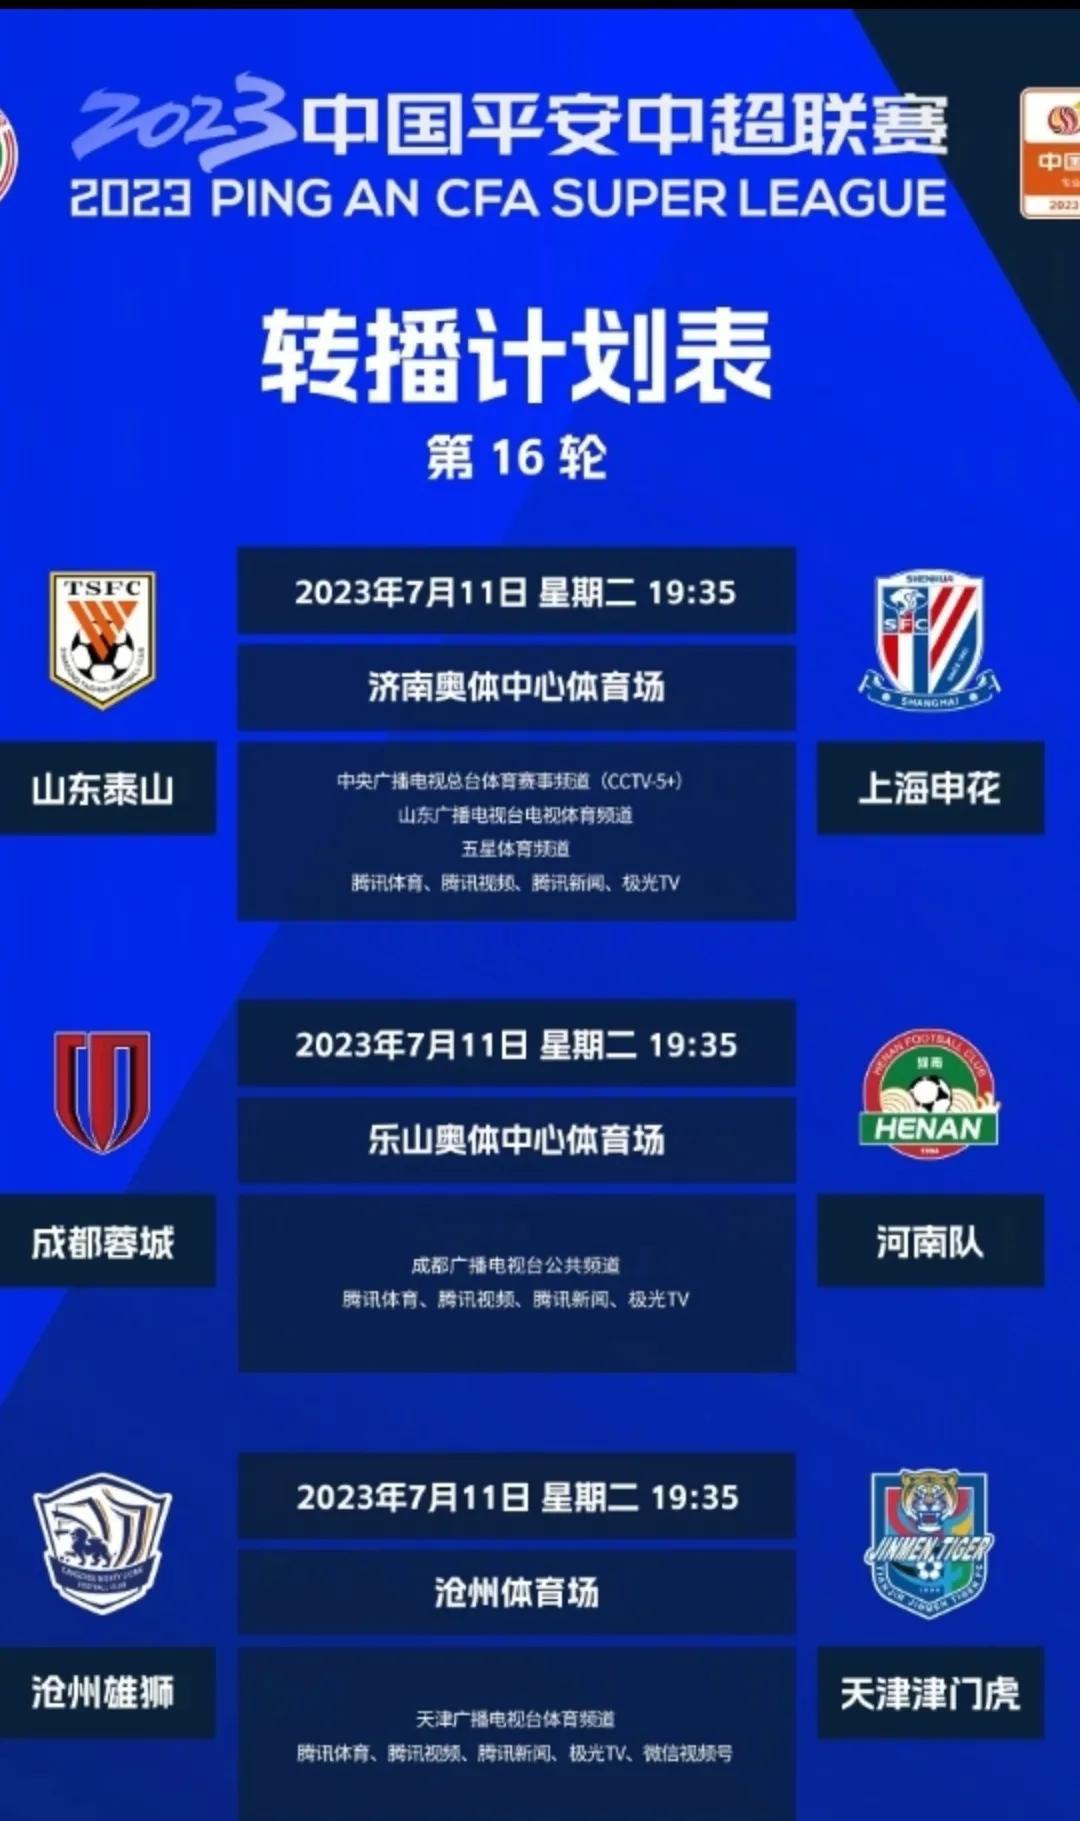 中超第16轮，7月11日进行的3场赛事裁判安排及转播平台

1，山东泰山vs上海(2)